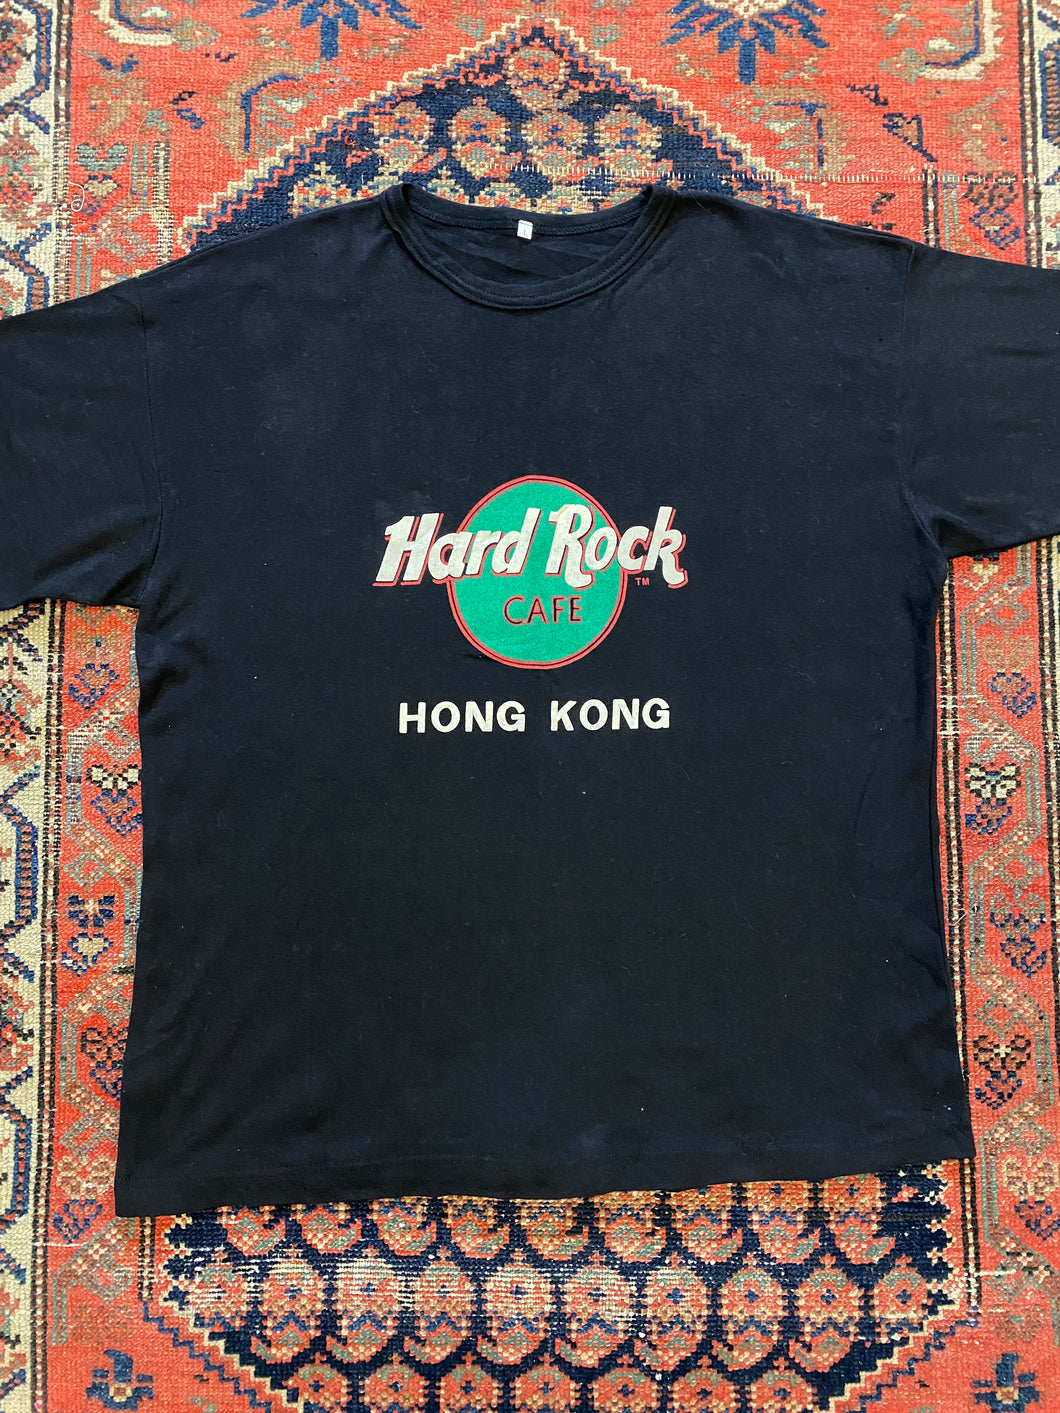 Vintage Hard Rock Cafe t shirt - L